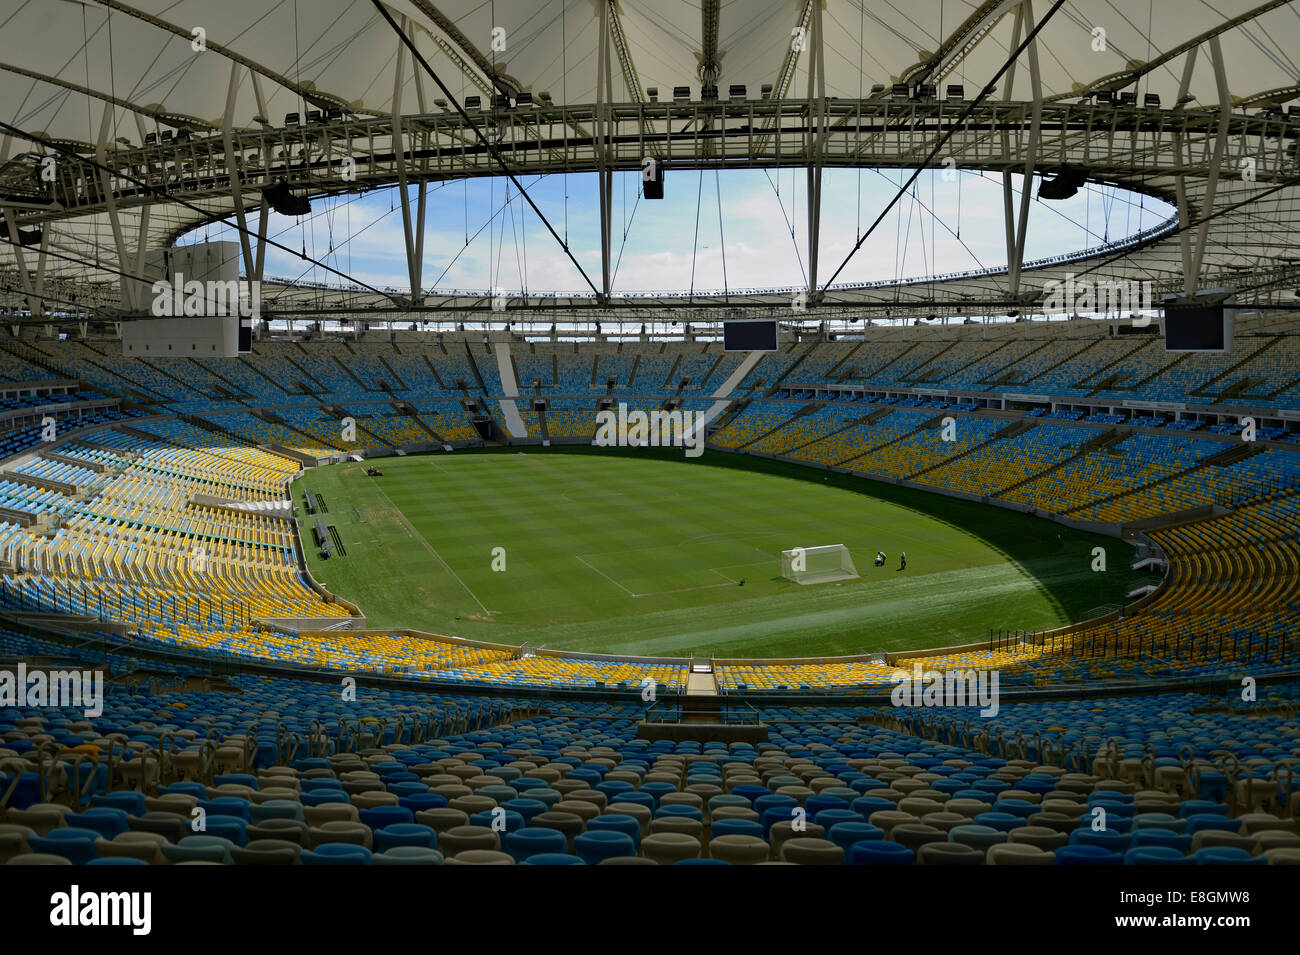 Maracanã Stadium, lo stadio di calcio, vista dalla tribuna, sede del 2014 FIFA World Cup, Rio de Janeiro, Brasile Foto Stock